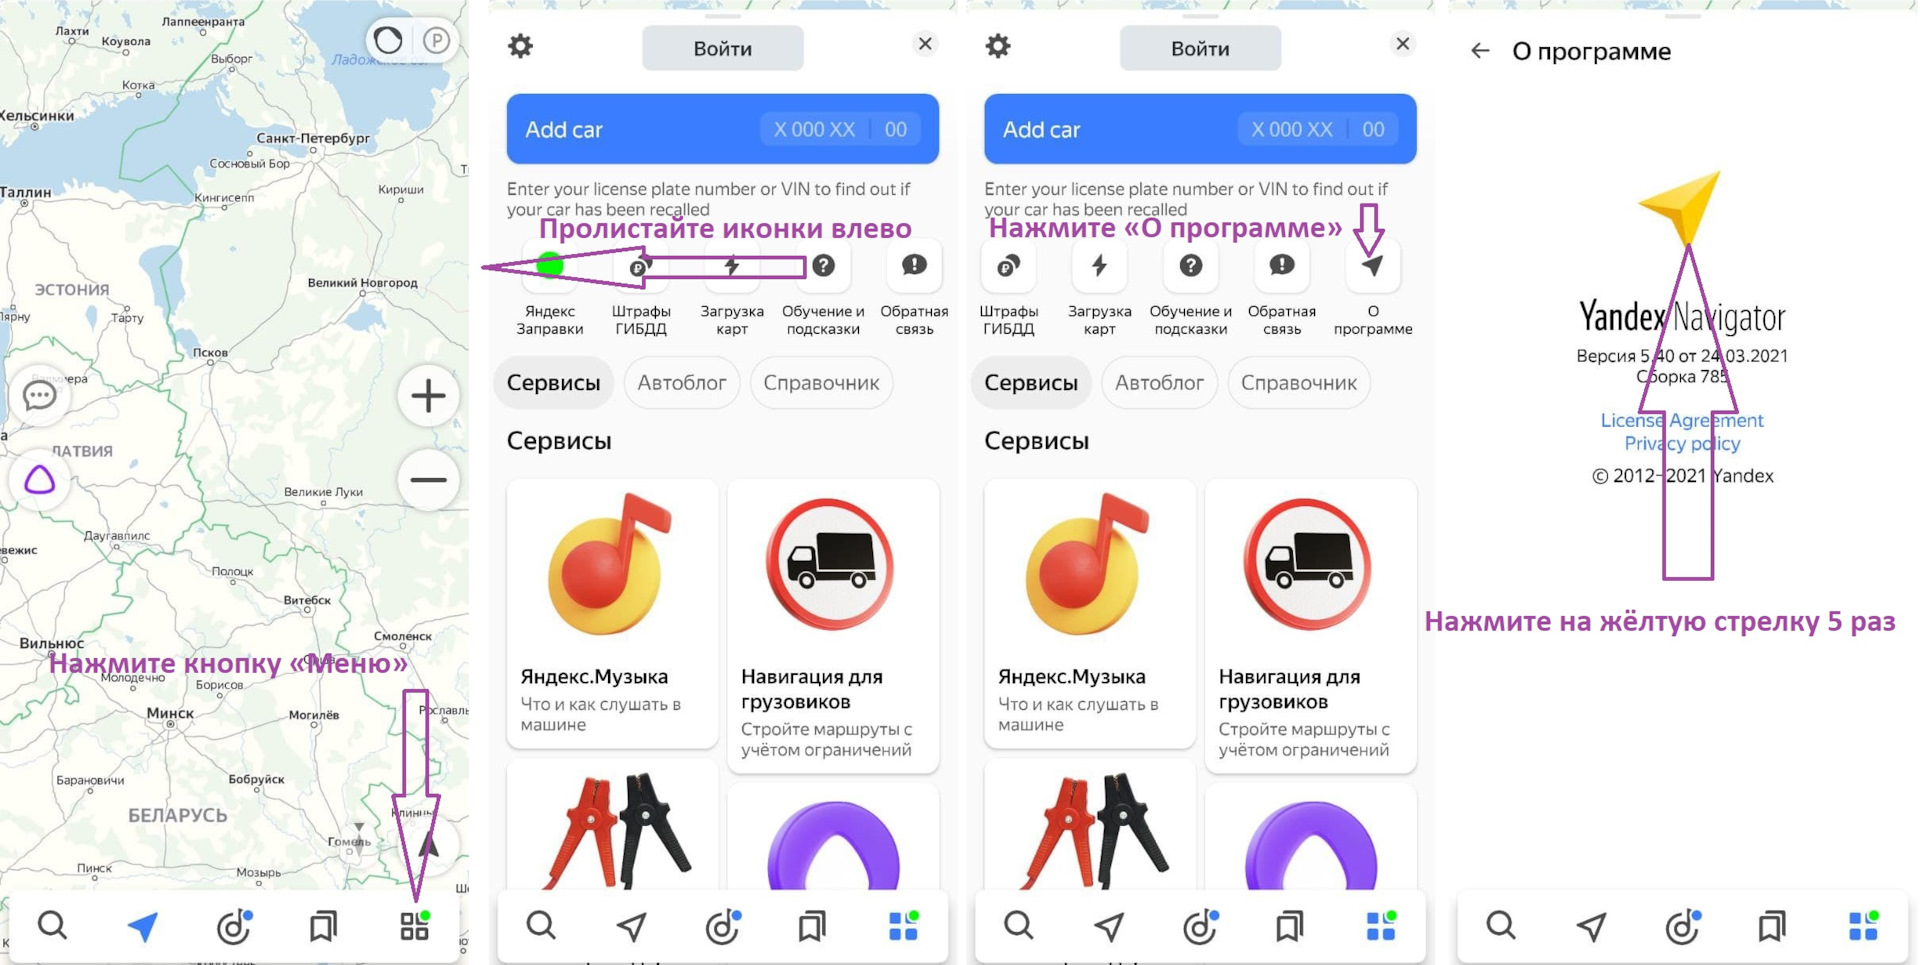 Значки в Яндекс навигаторе расшифровка